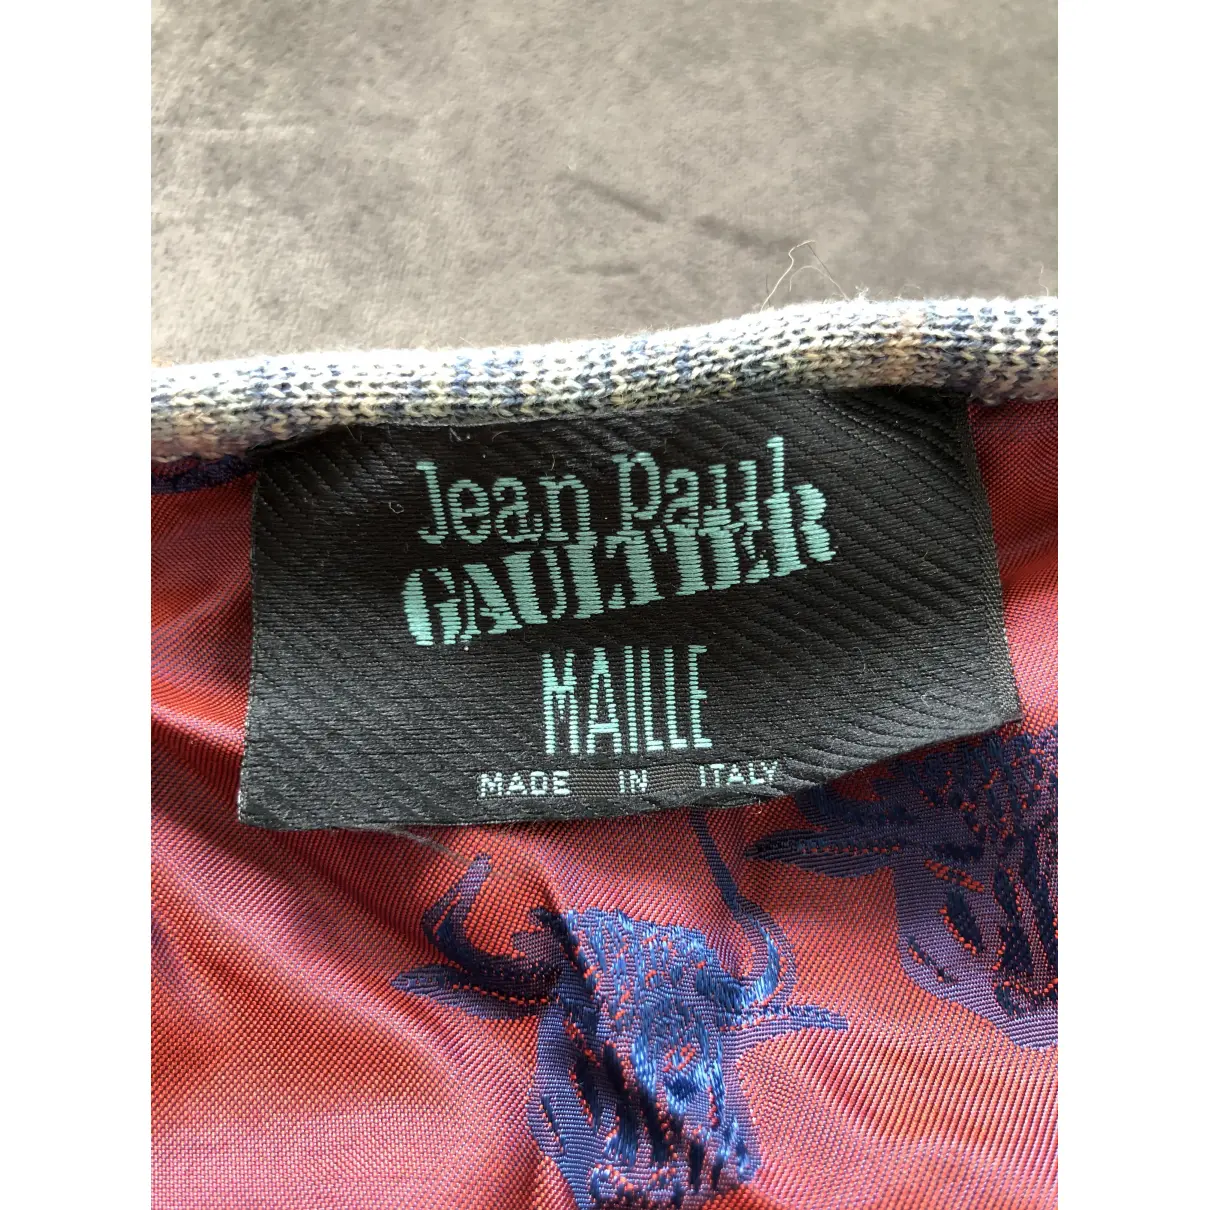 Wool vest Jean Paul Gaultier